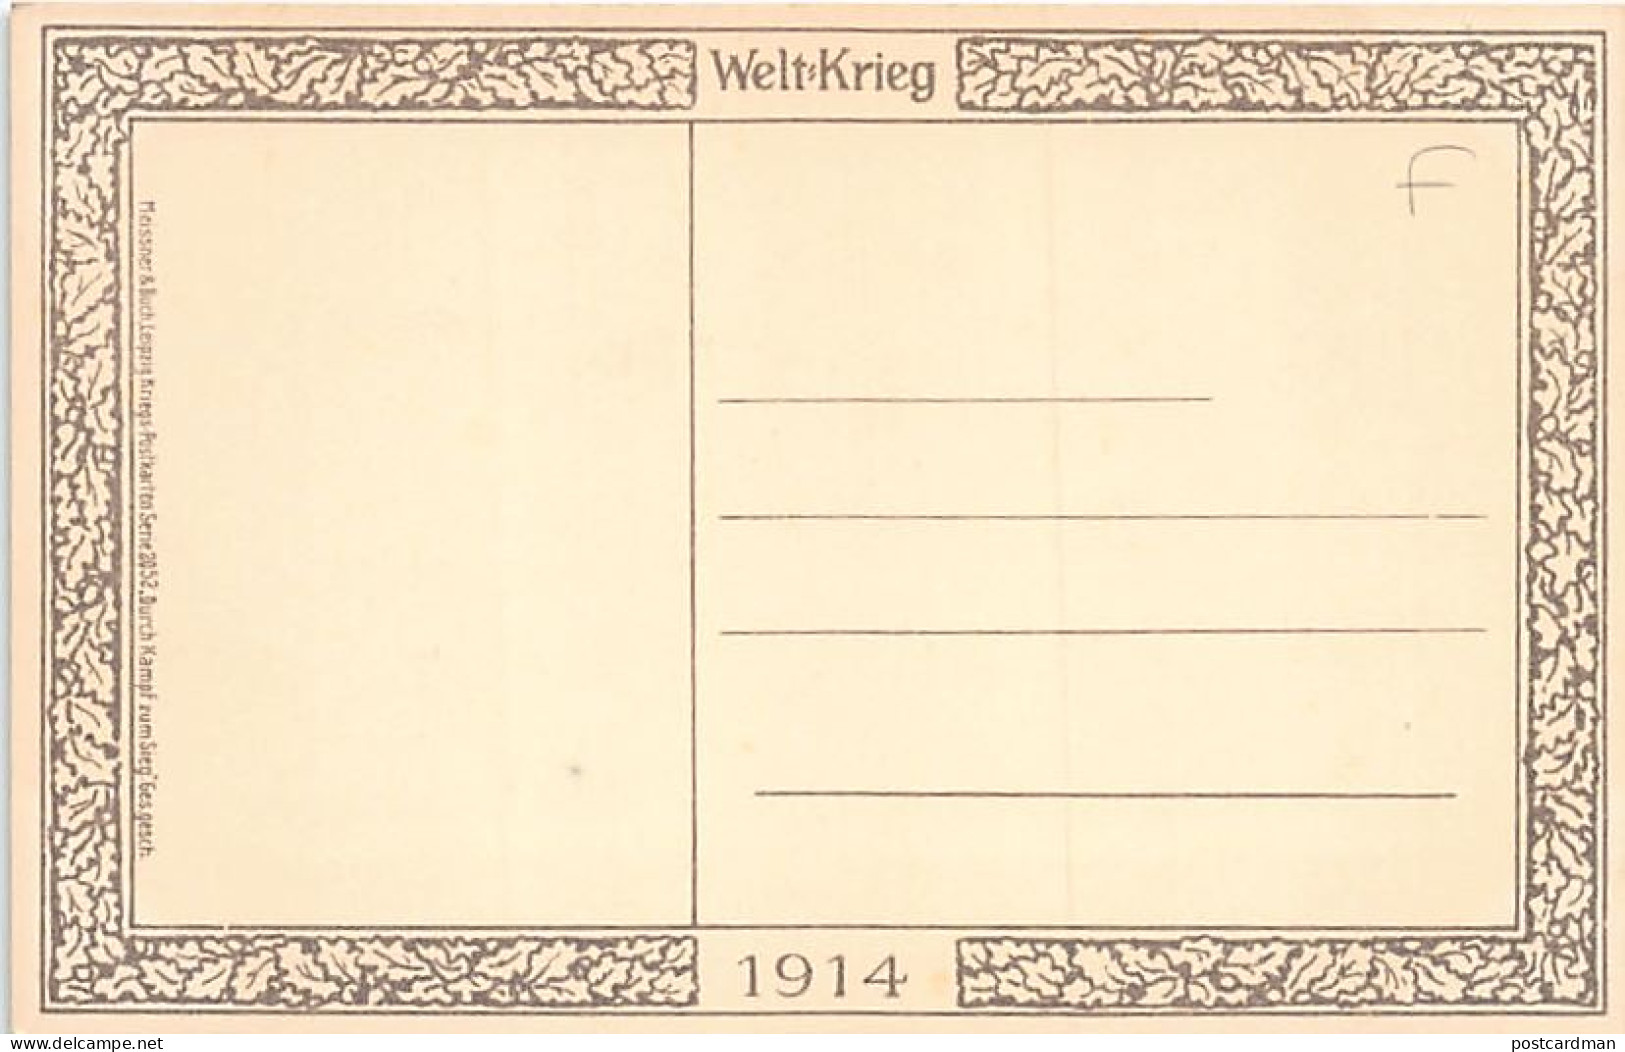 Österreich - Wien - Kaiser Wilhelm II - Kaiser Franz Joseph - Fest Und Getreu -Weltkrieg -1914 - Verlag Meissner Und Buc - Vienna Center